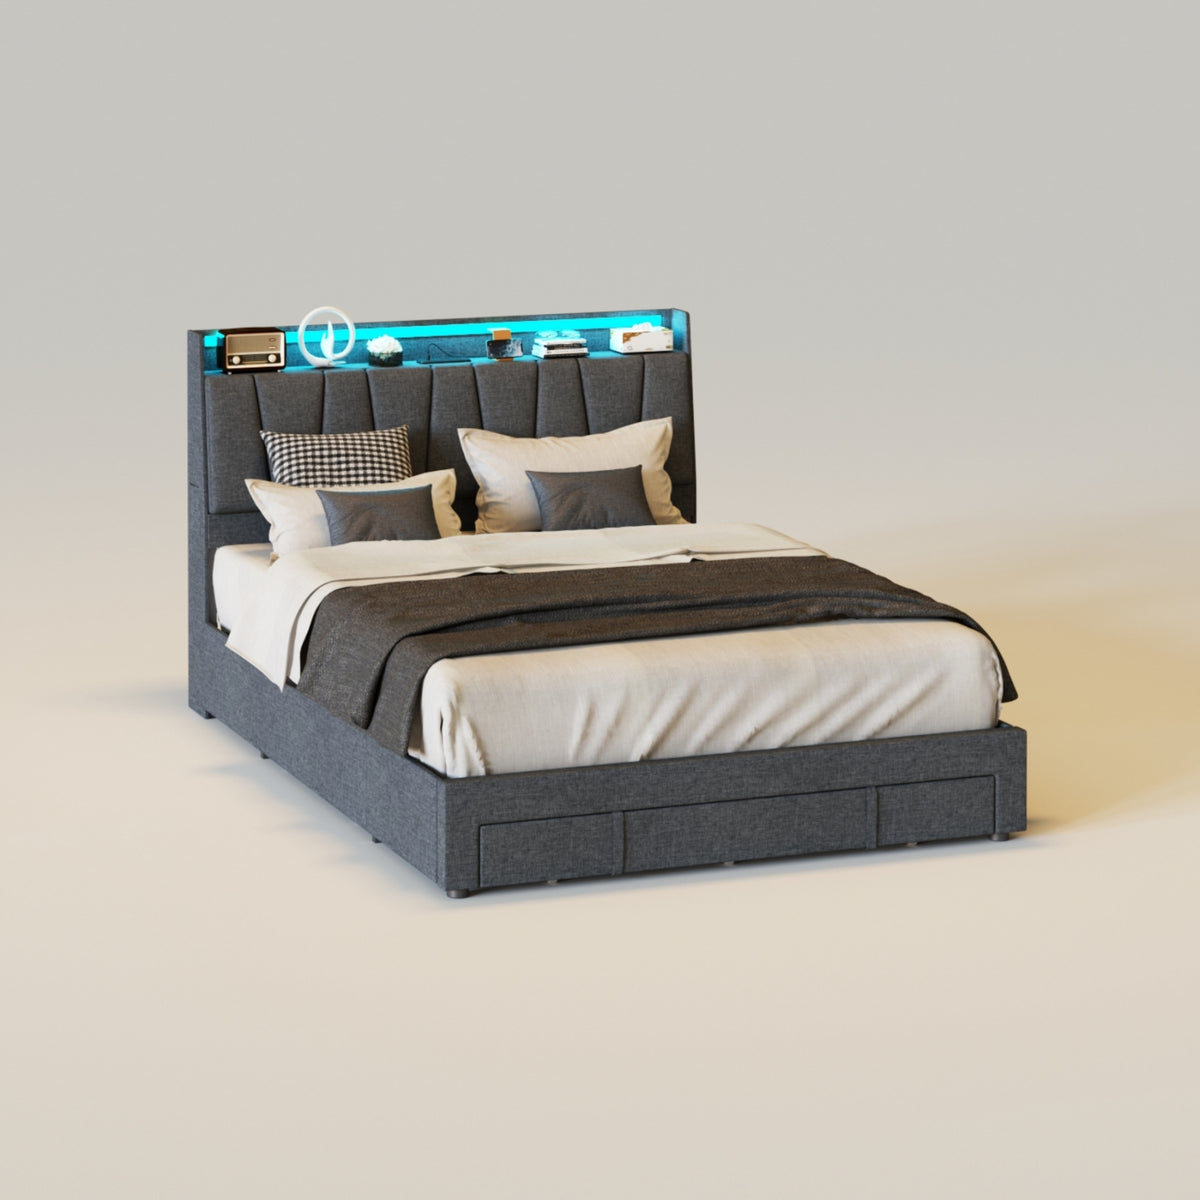 3 Drawers LED Upholstered Platform Bed